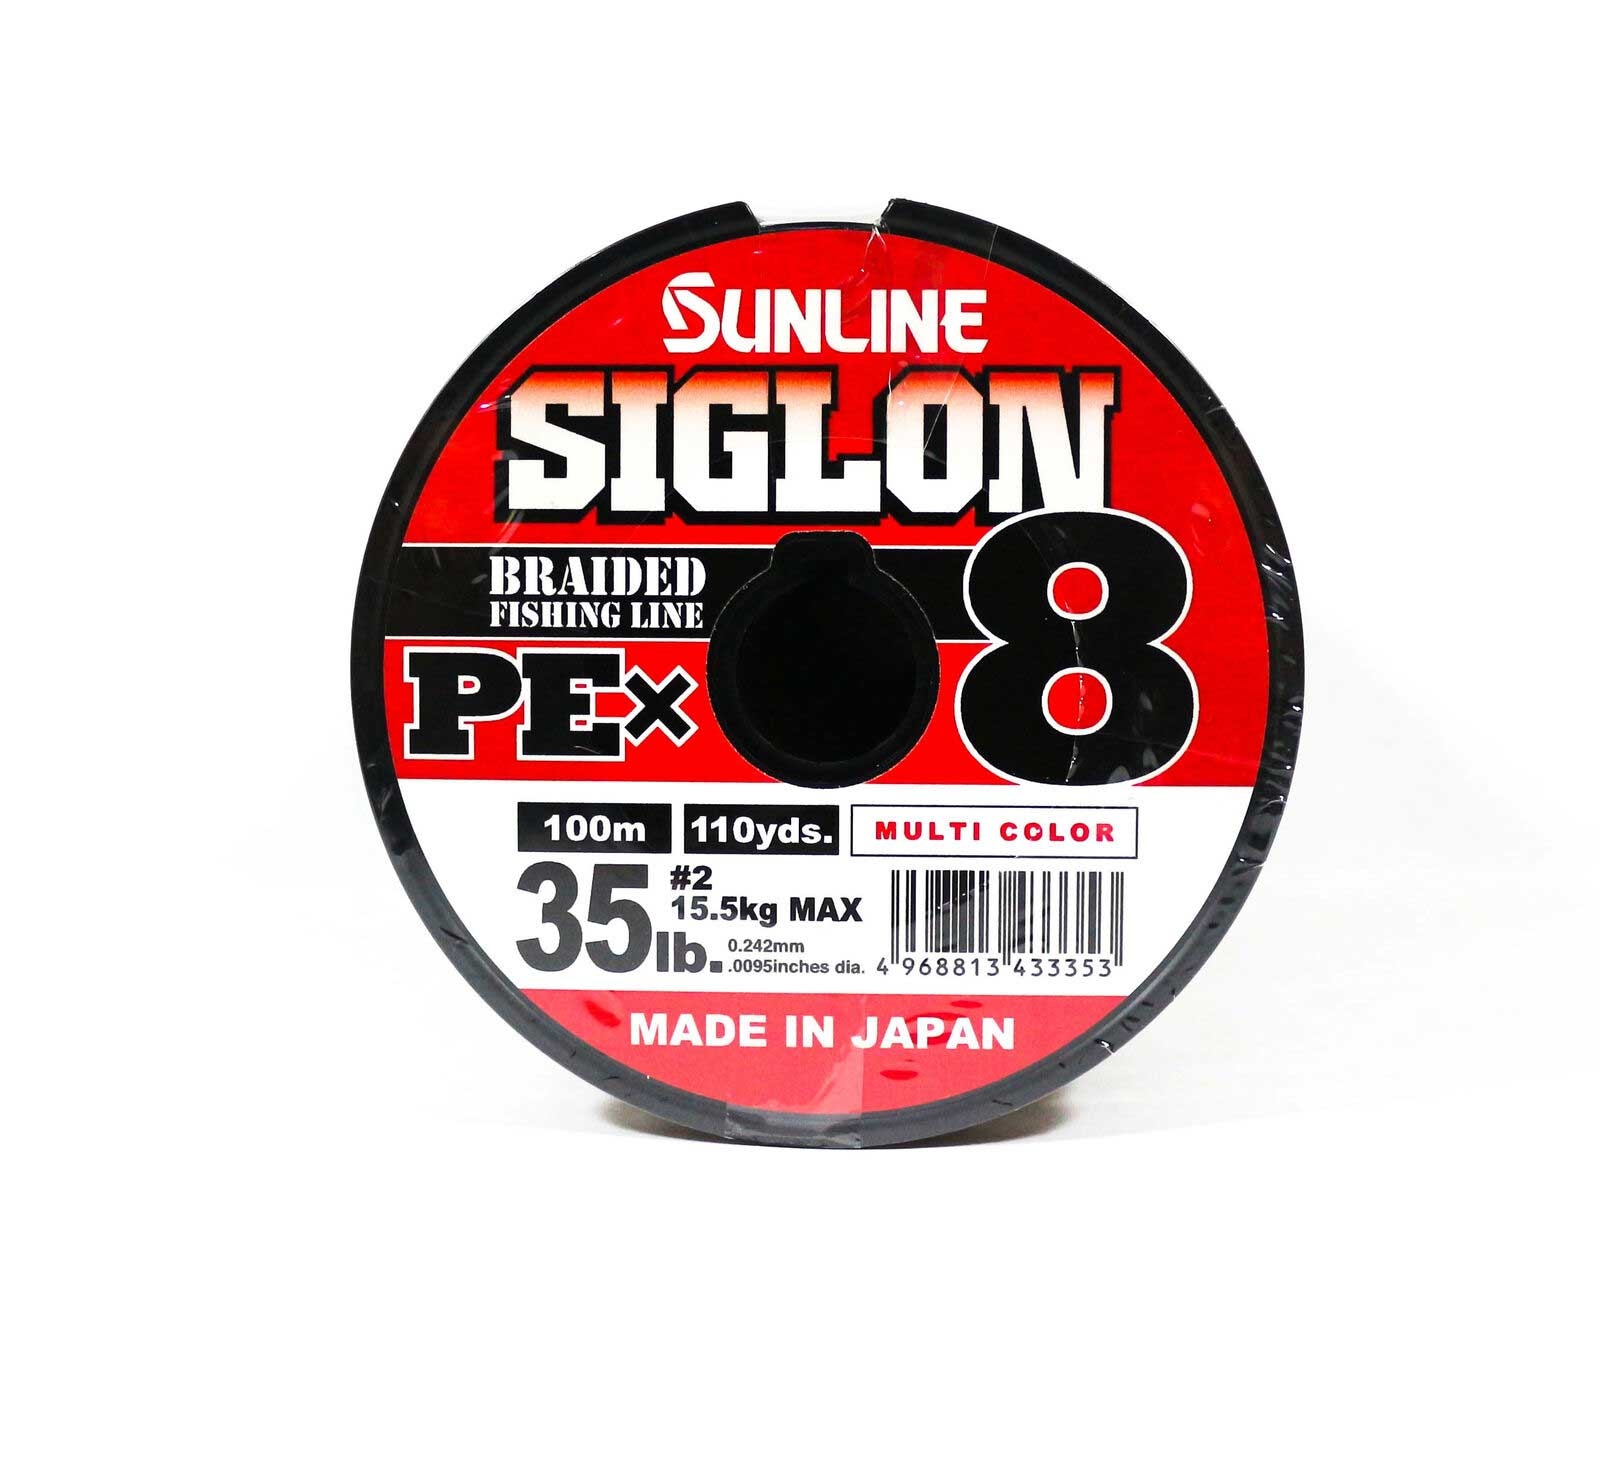 Sunline Siglon PEx8 100m #PE-2 (Multi Color)*สายพีอี - 7 SEAS